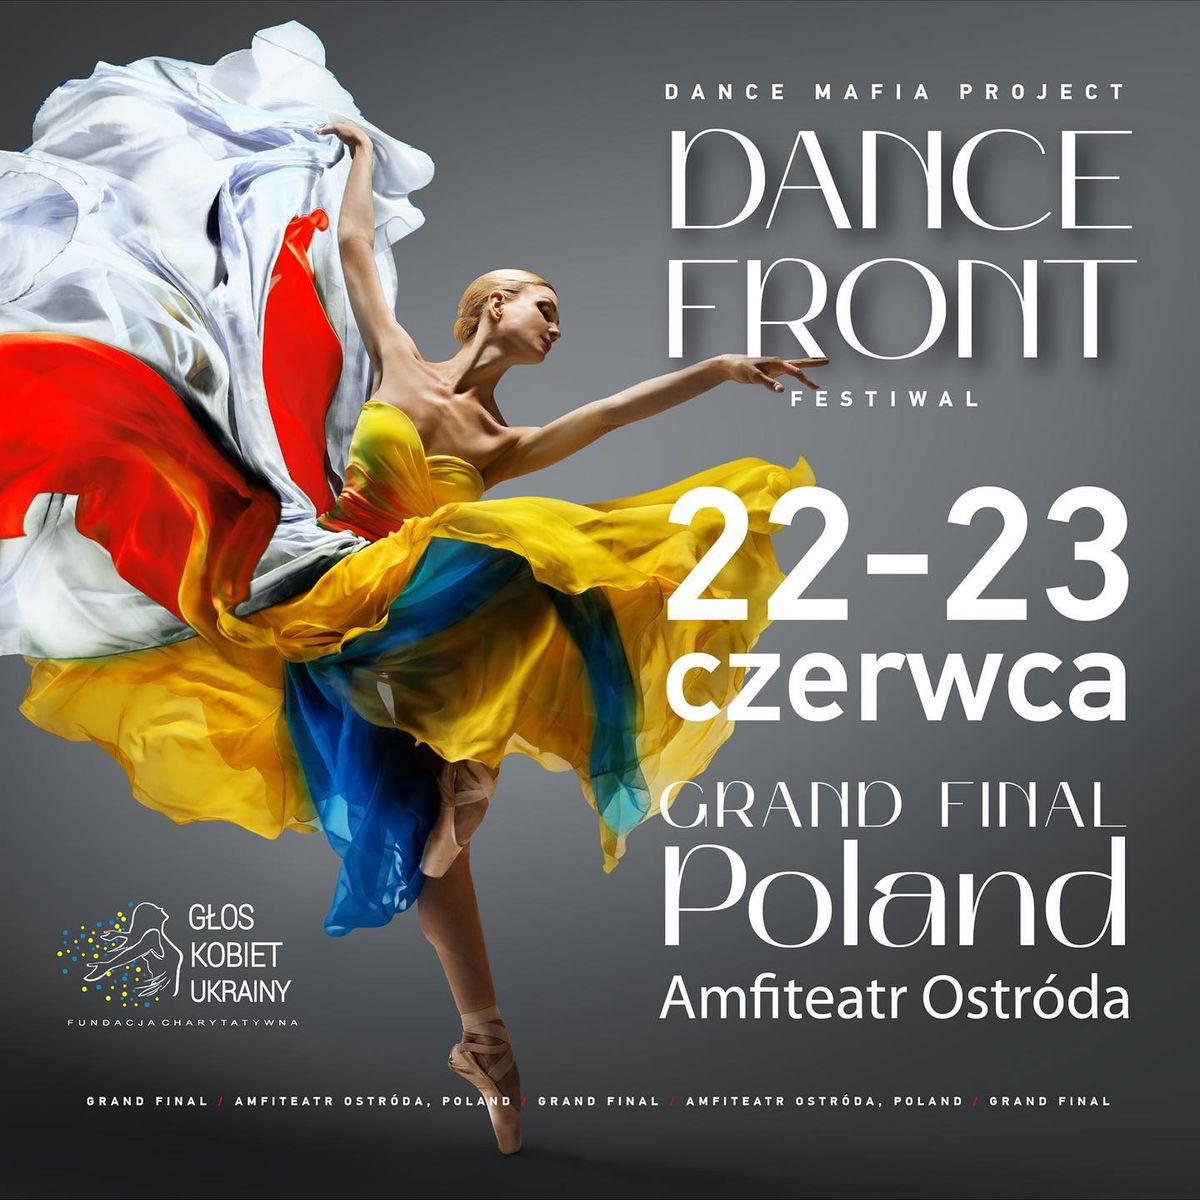 У Польщі пройде Гранд Фінал Дитячого Танцювального Фестивалю «Dance Front»

